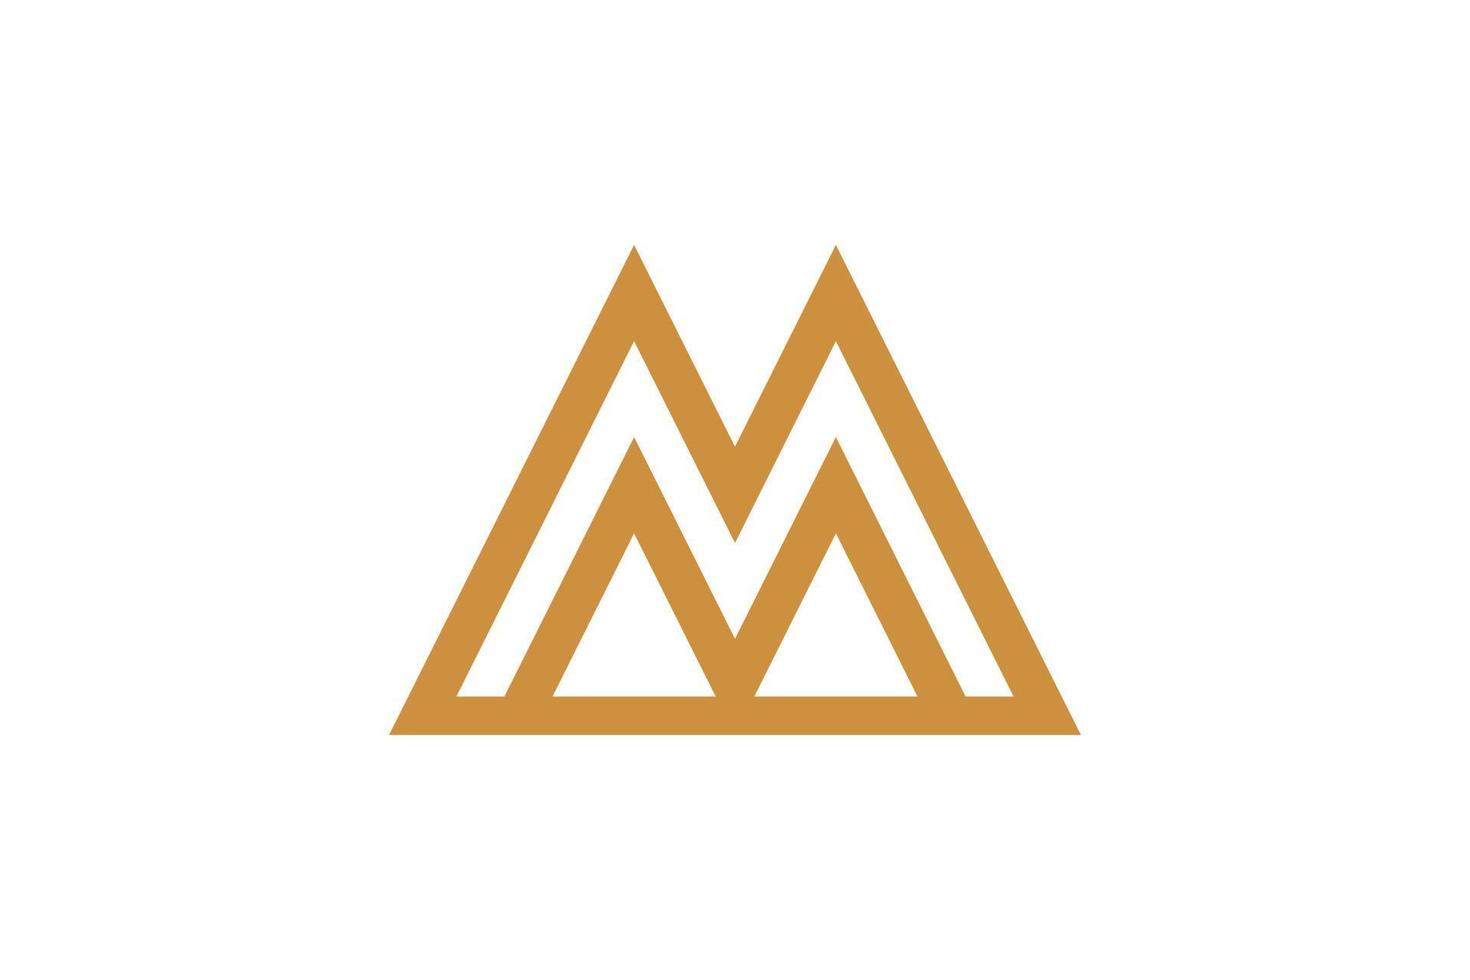 logotipo de la letra m monolínea vector